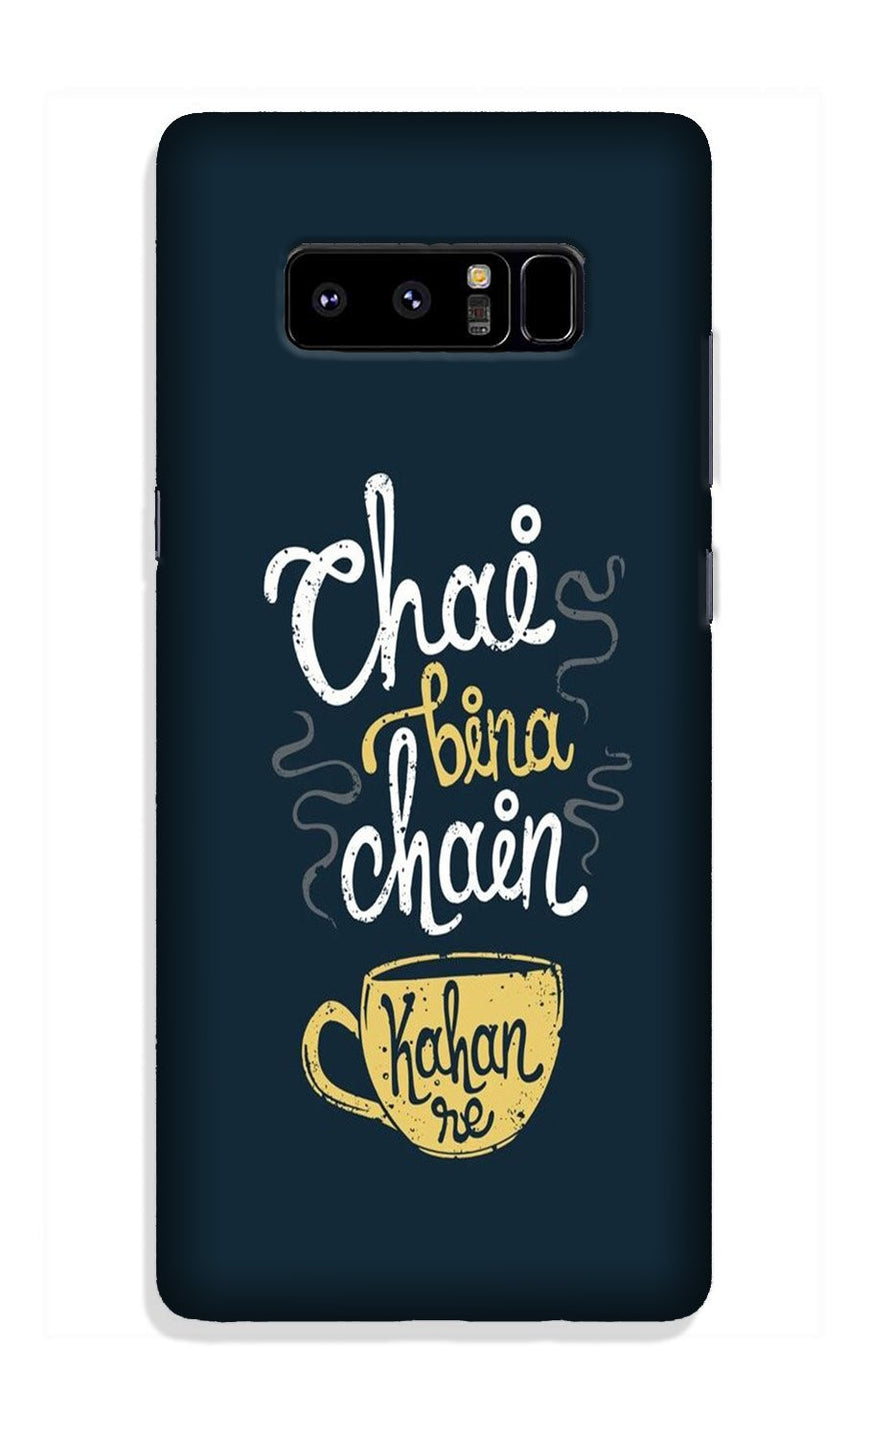 Chai Bina Chain Kahan Case for Galaxy Note 8  (Design - 144)